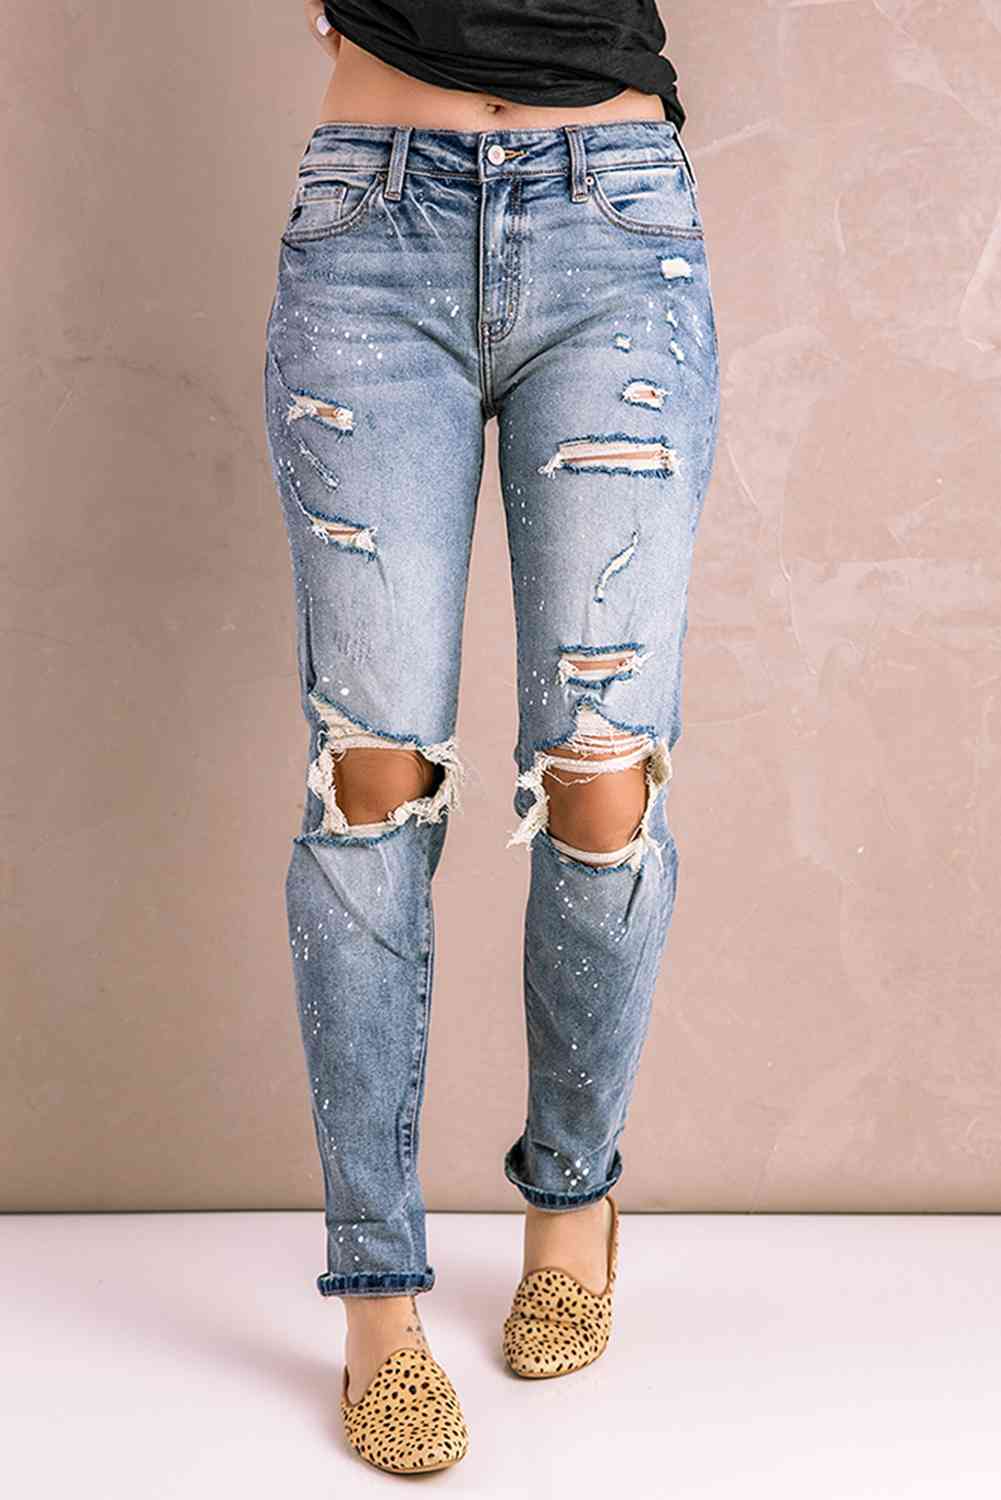 Baeful Splatter Distressed Acid Wash Jeans with Pockets Light Wash S